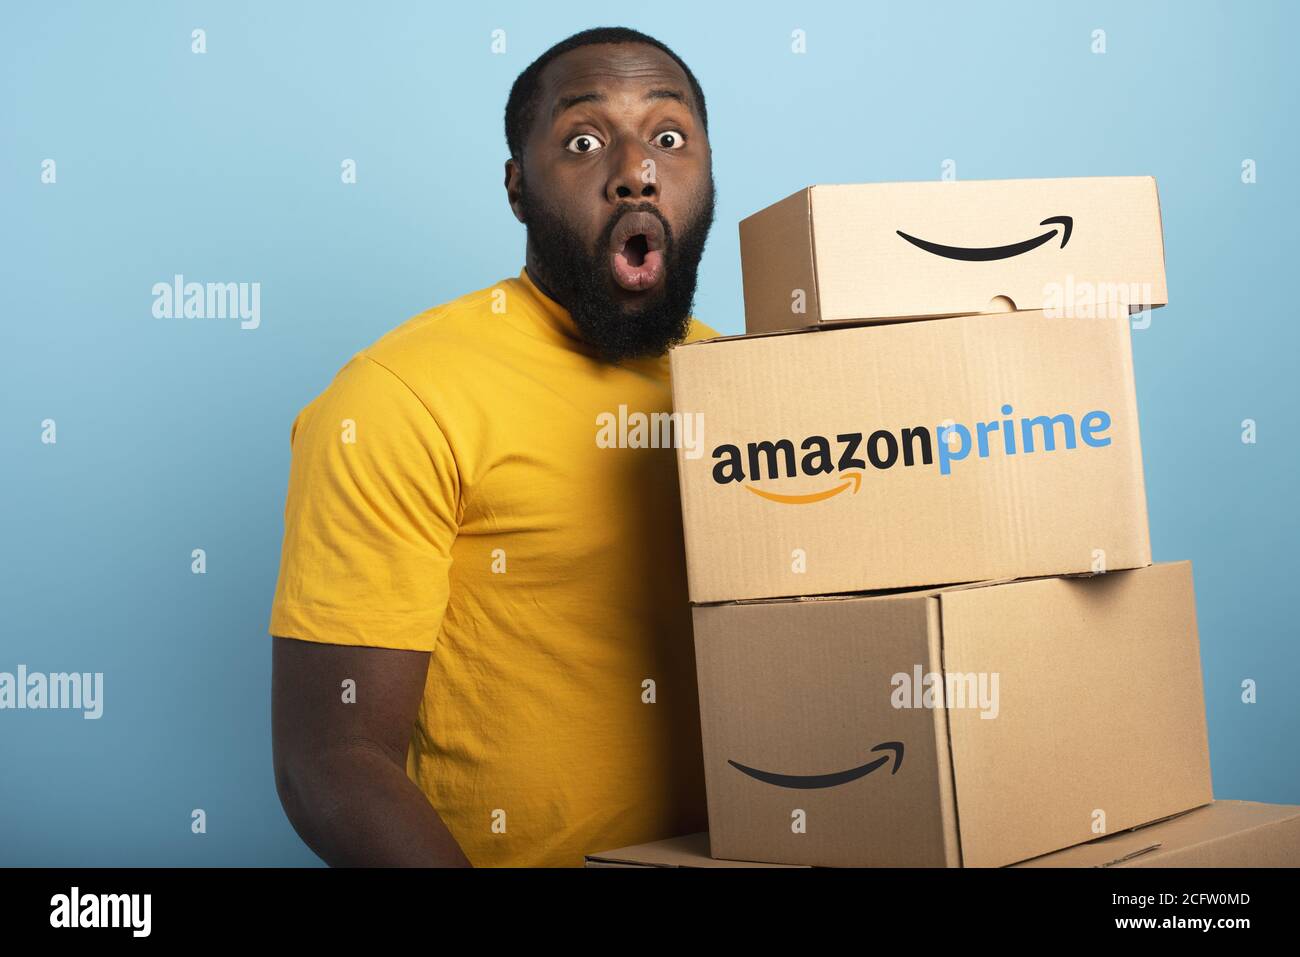 Überrascht Mann hält eine Menge von Amazon Prime-Pakete. Cyanfarbener Hintergrund Stockfoto